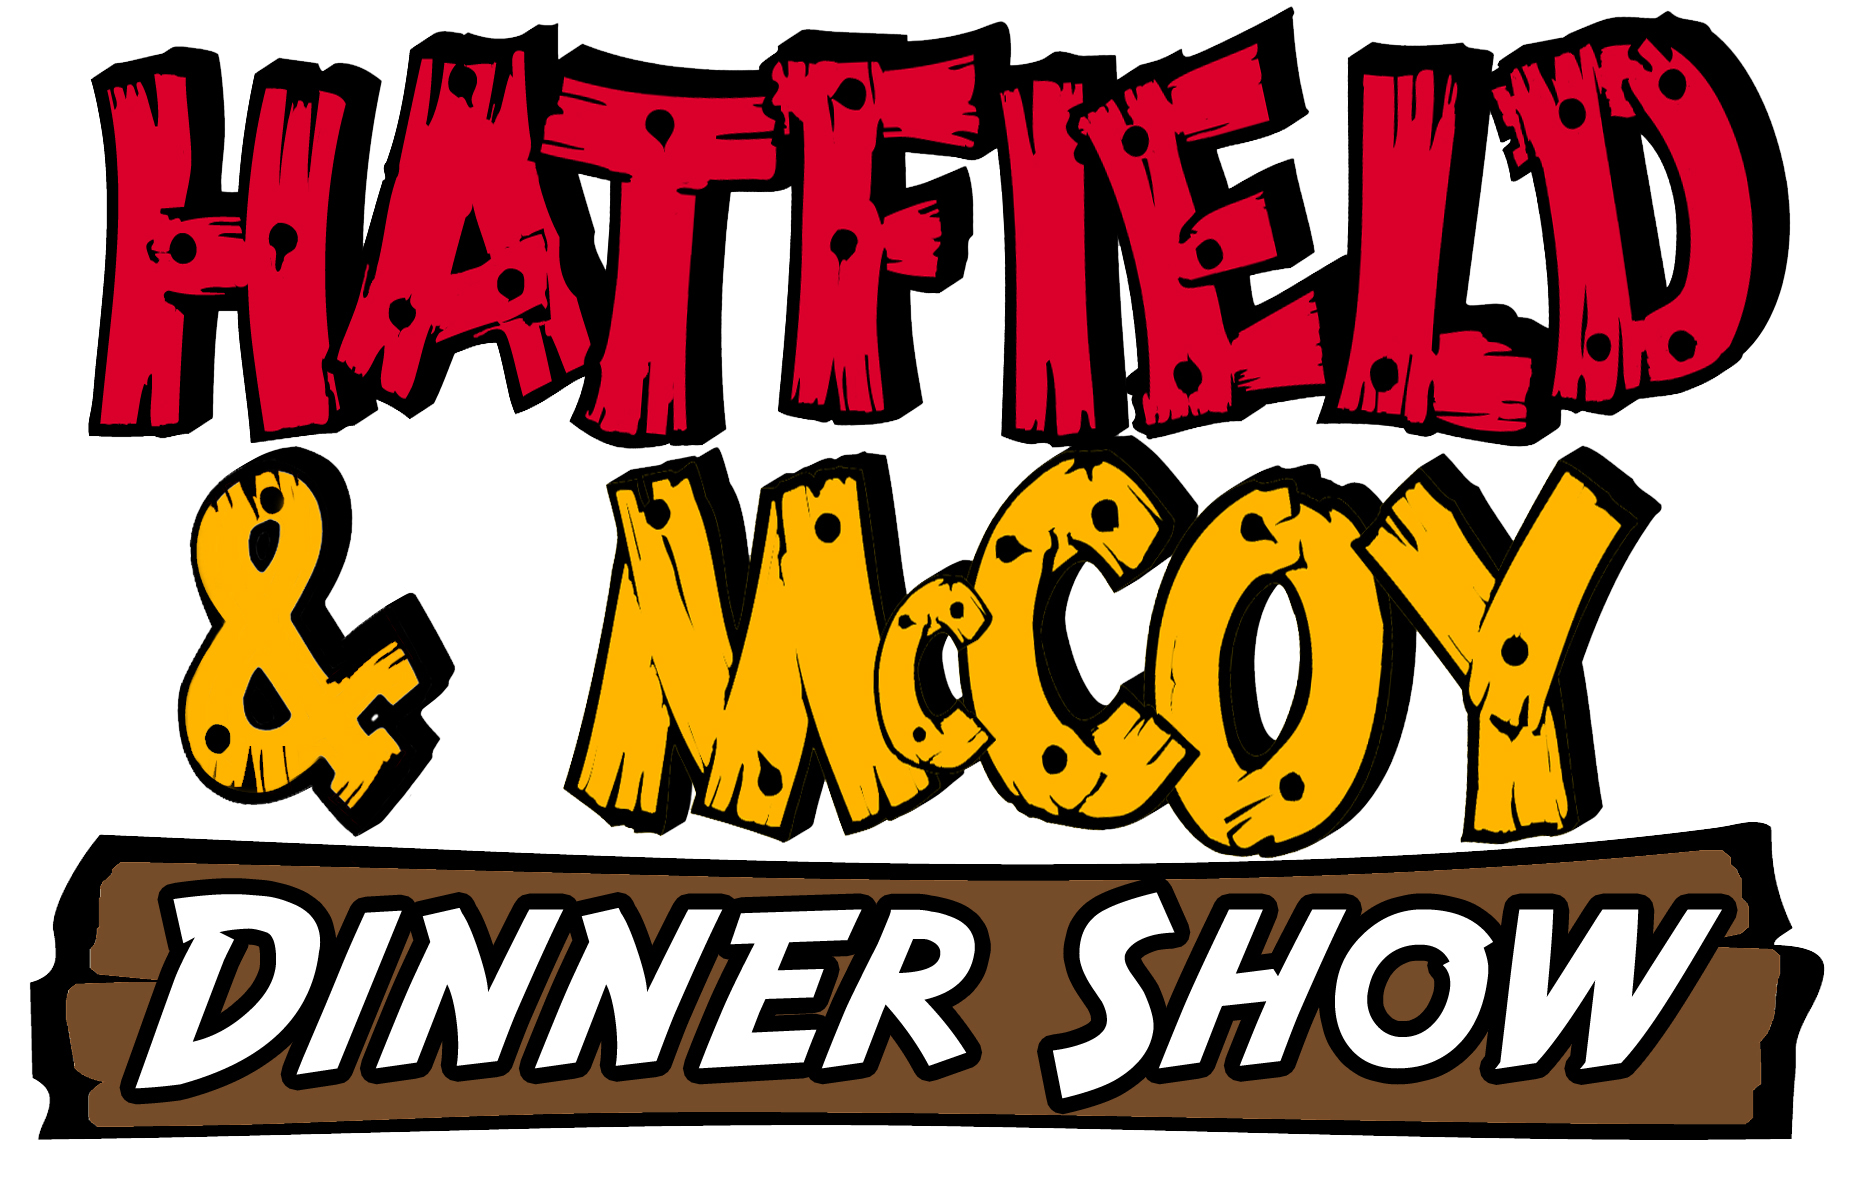 Hatfield & McCoy Dinner Feud logo